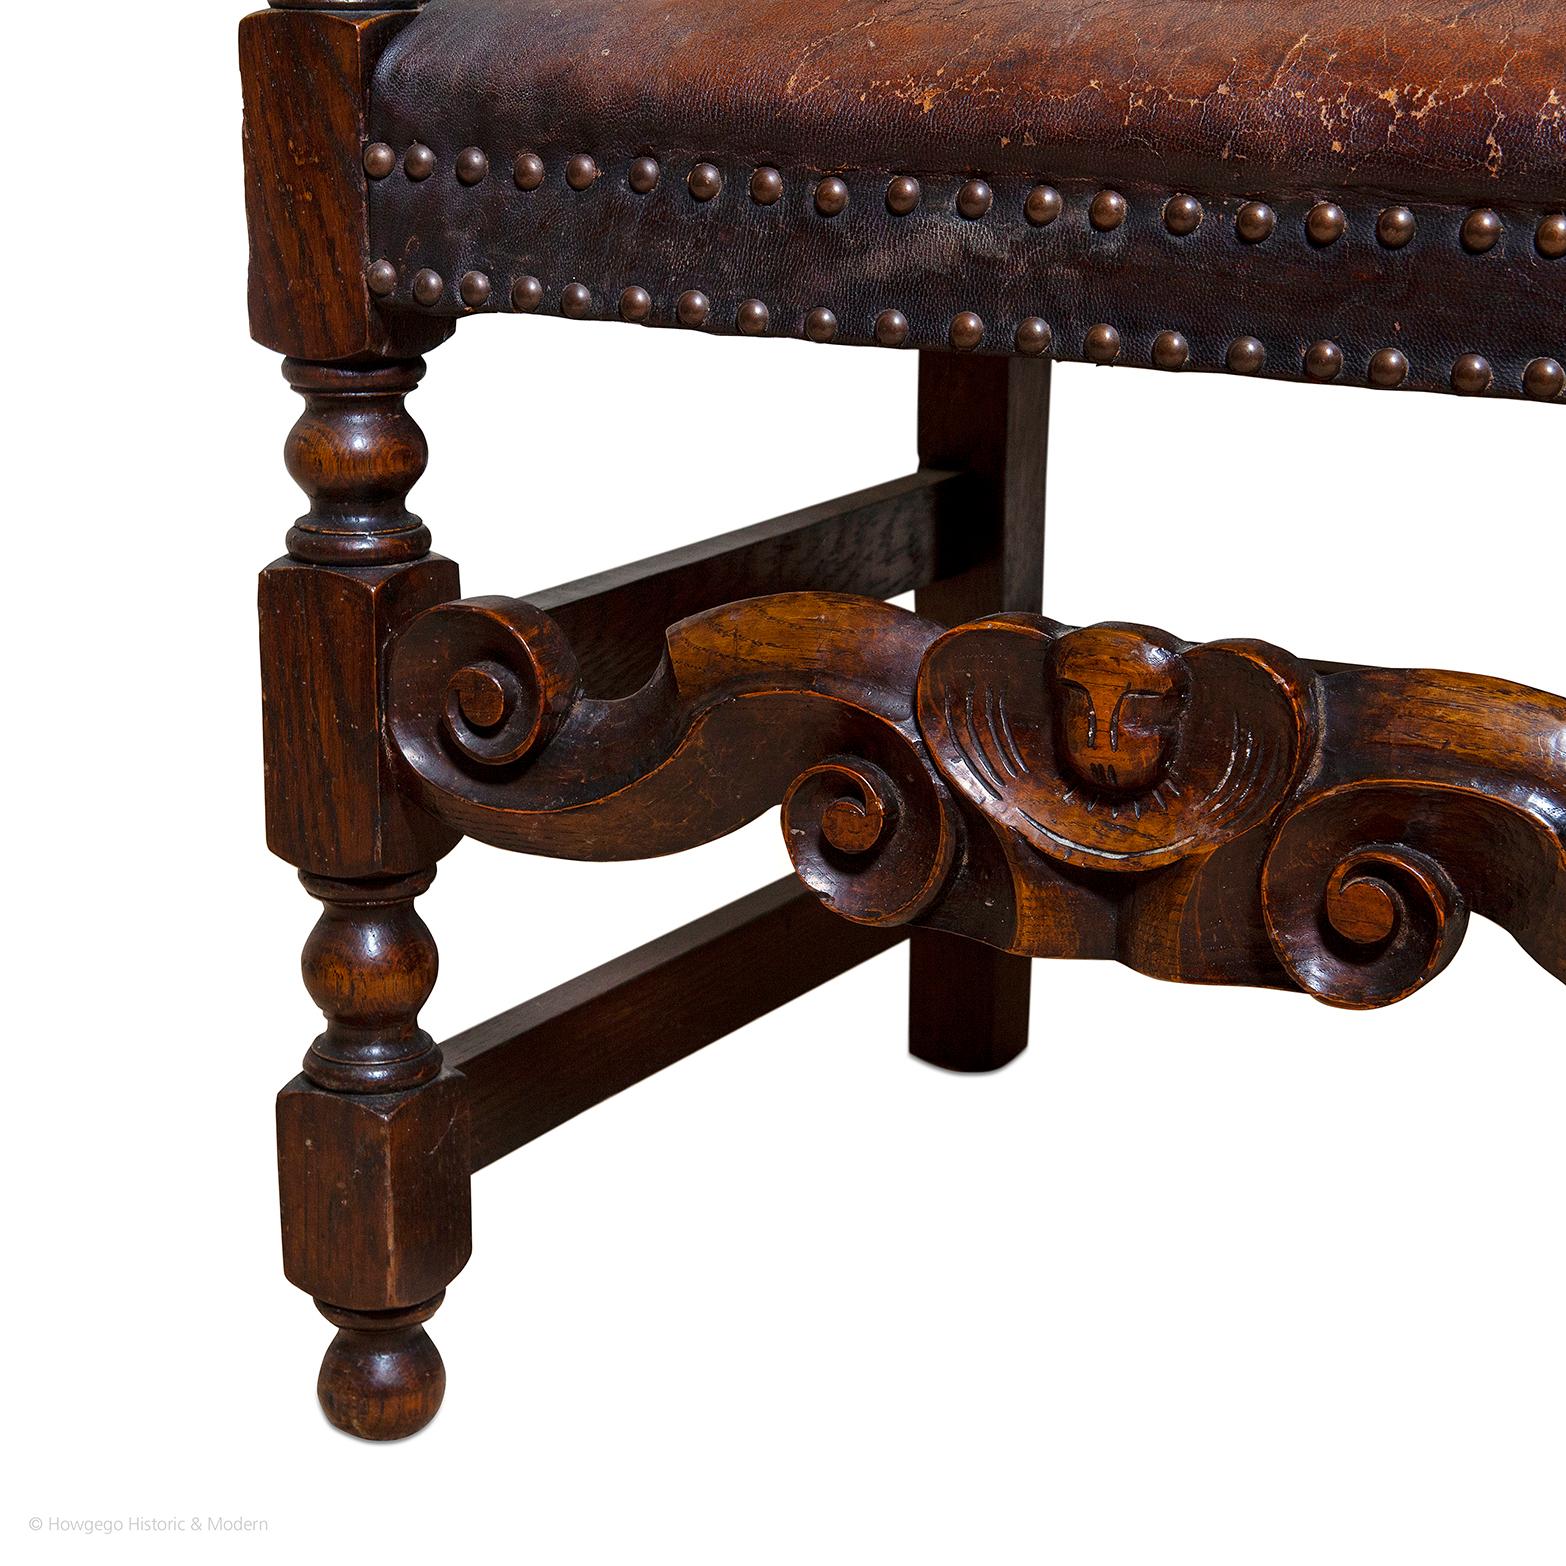 - Attraktiver Sessel, der jedem Interieur einen zeitgemäßen Charakter verleiht
- Robust und für den regelmäßigen Gebrauch geeignet
- Dieses Stuhlmodell wurde Mitte des 17. Jahrhunderts in großer Zahl hergestellt, aber nur wenige Exemplare aus